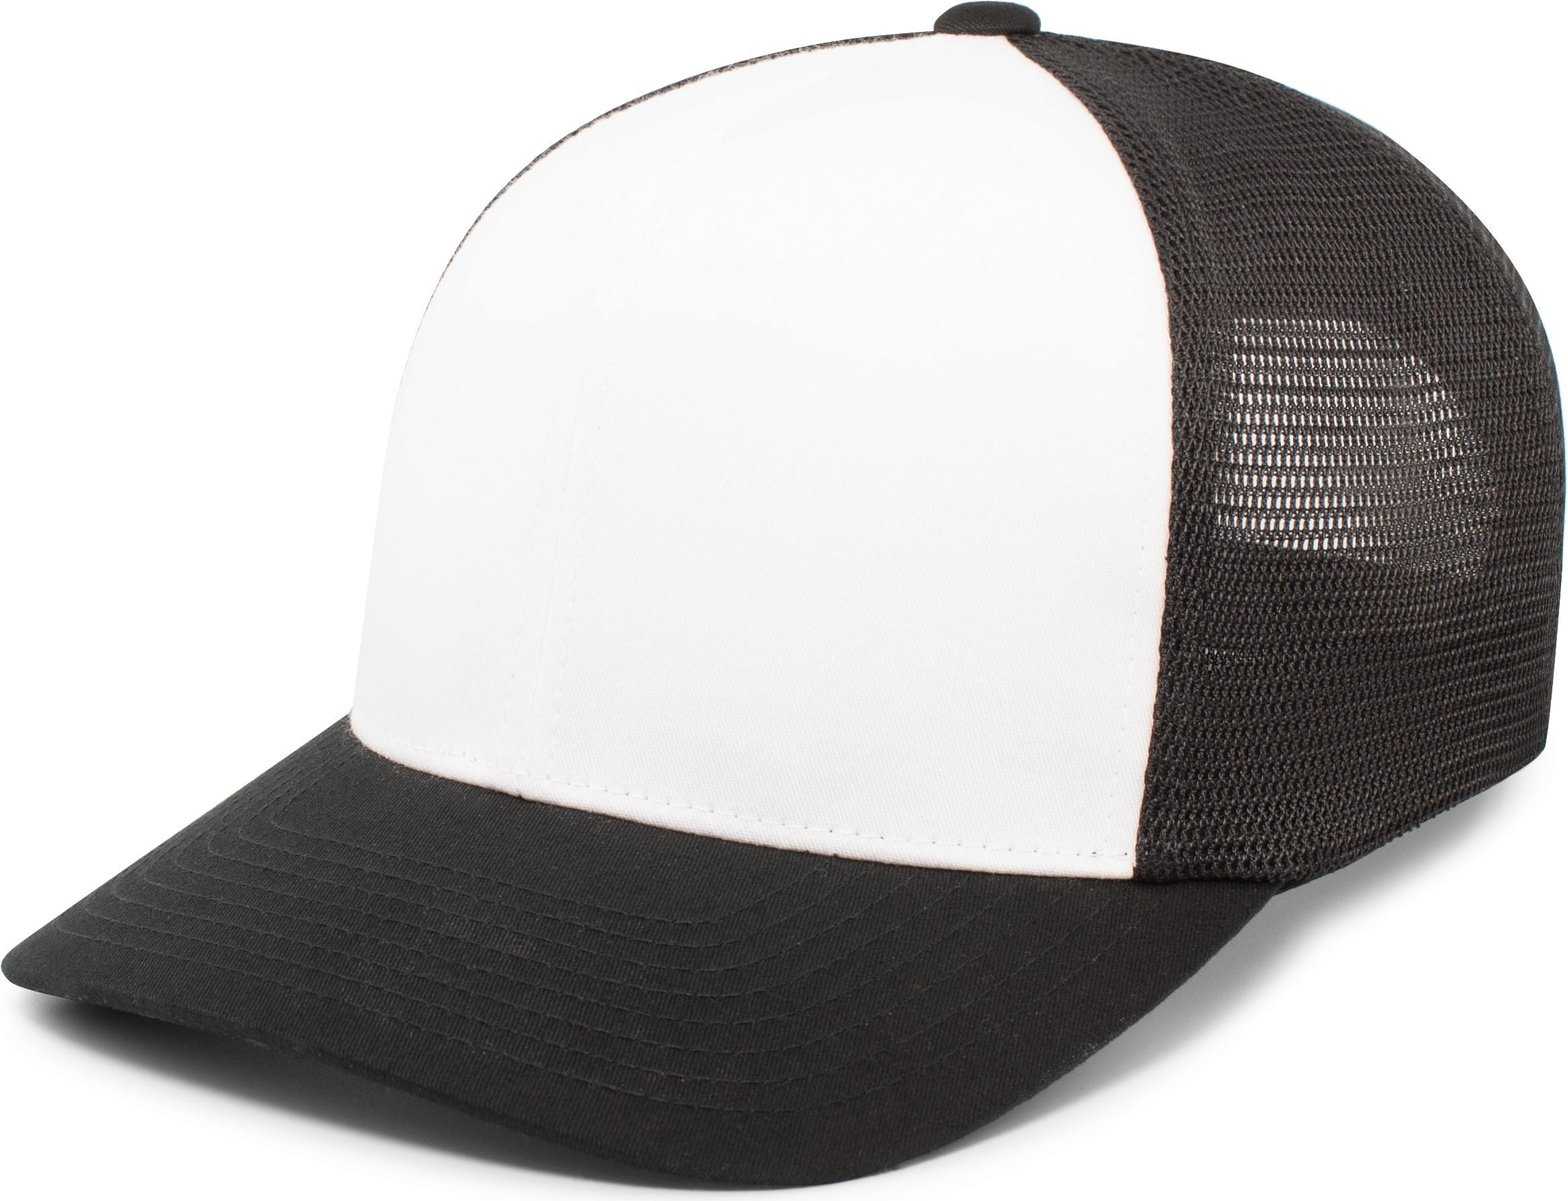 Pacific Headwear 110F Trucker Flexfit Snapback Cap - White Black Black - HIT a Double